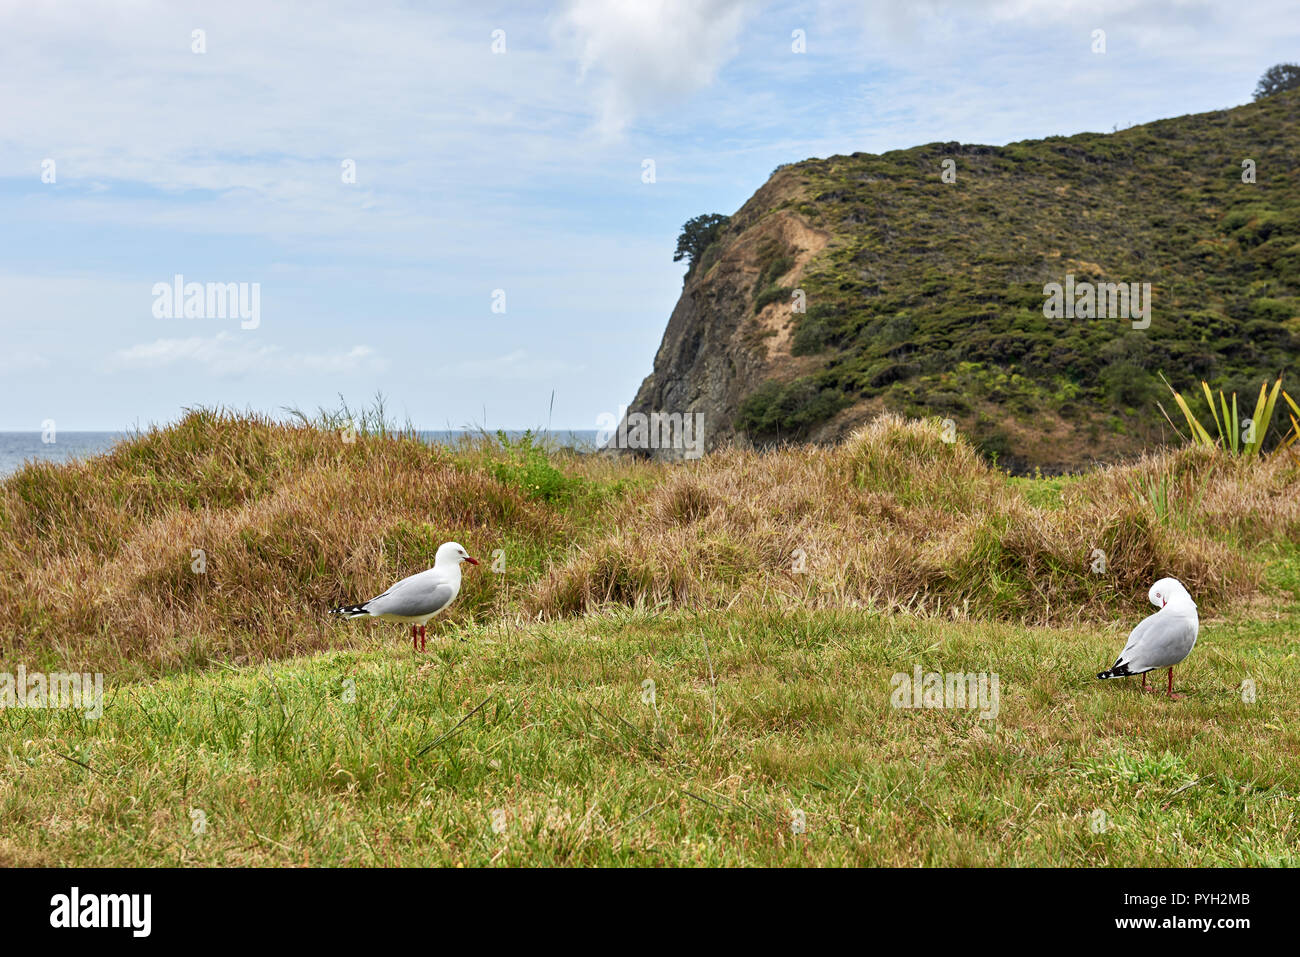 Cerclée de rouge avec seagull marques distinctives debout sur l'herbe Banque D'Images